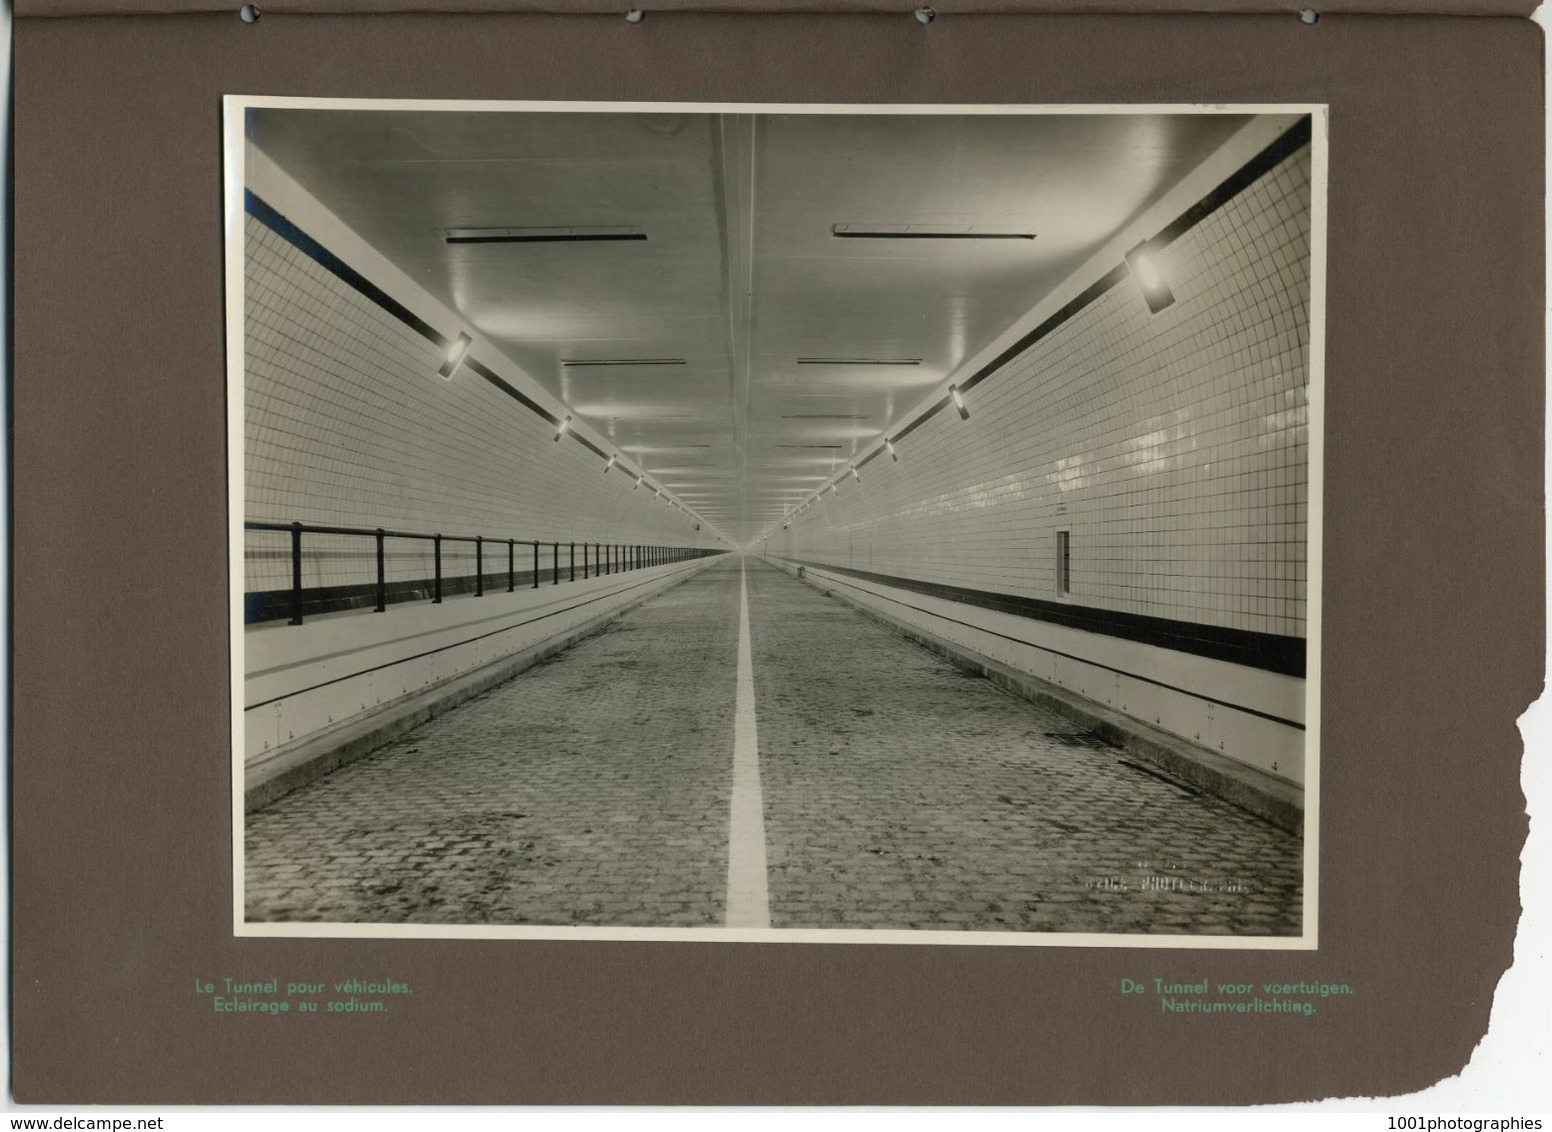 Anvers, Travaux du tunnel sous l'Escaut, finitions, éclairage, inauguration, 25 Tirages originaux d'époque. FG1748